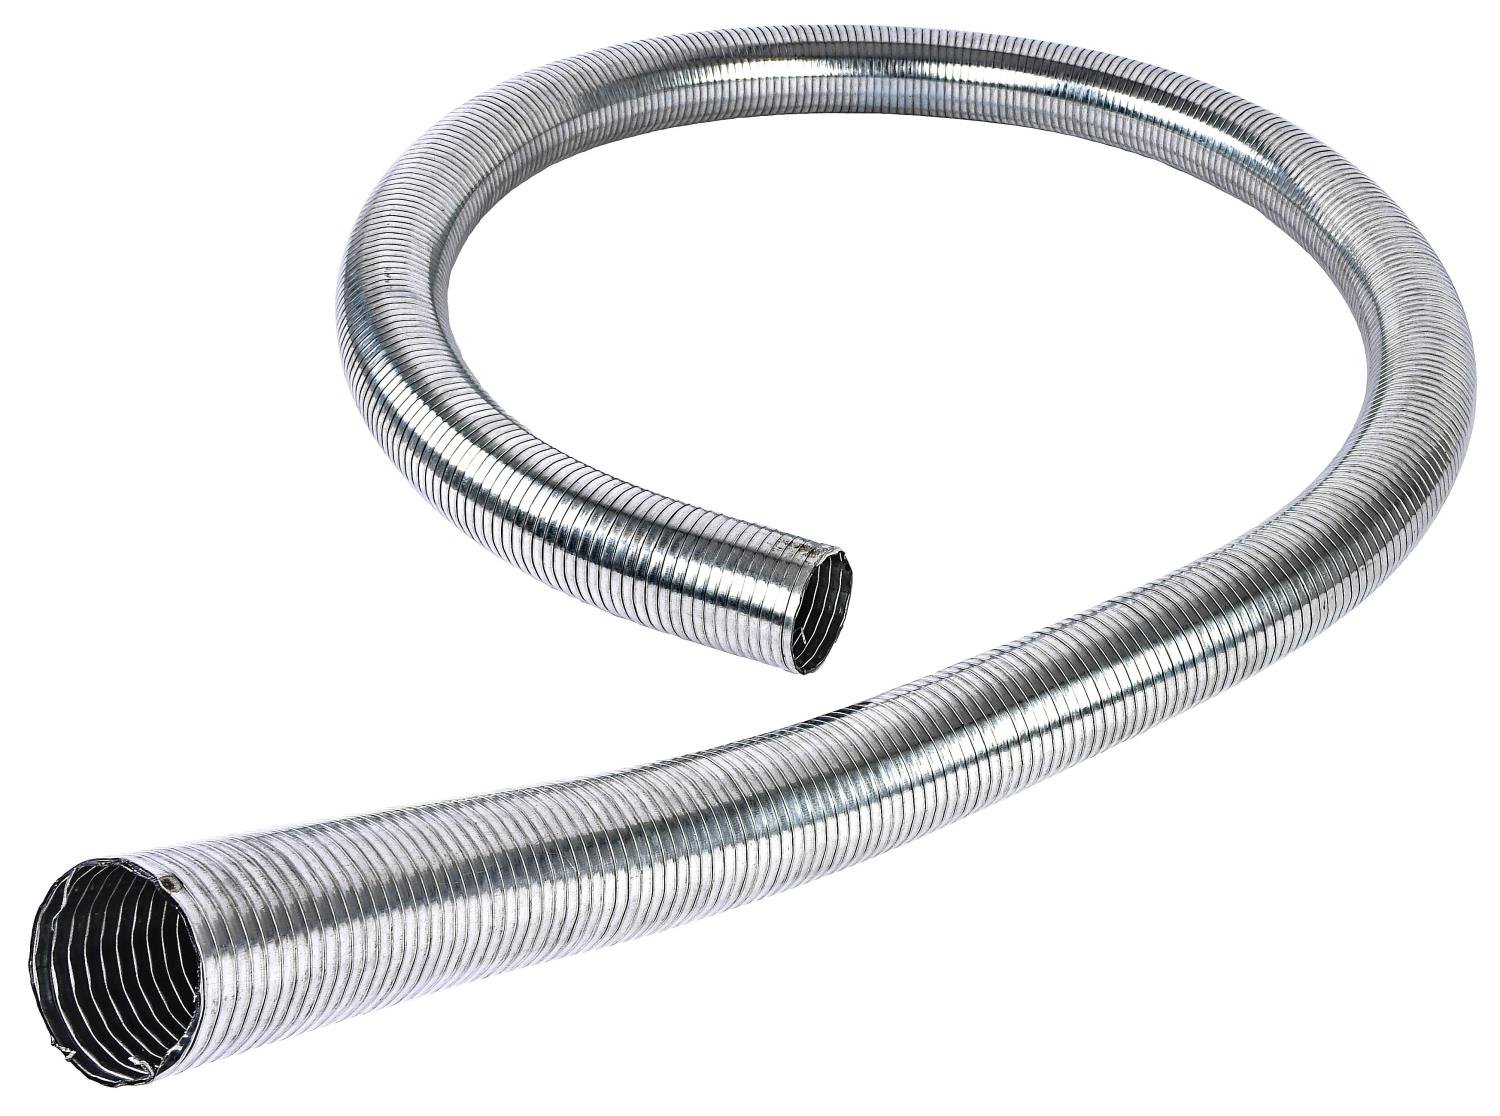 Flexible Exhaust Tubing 2 in. Diameter x 6 ft. Long [Galvanized Steel]